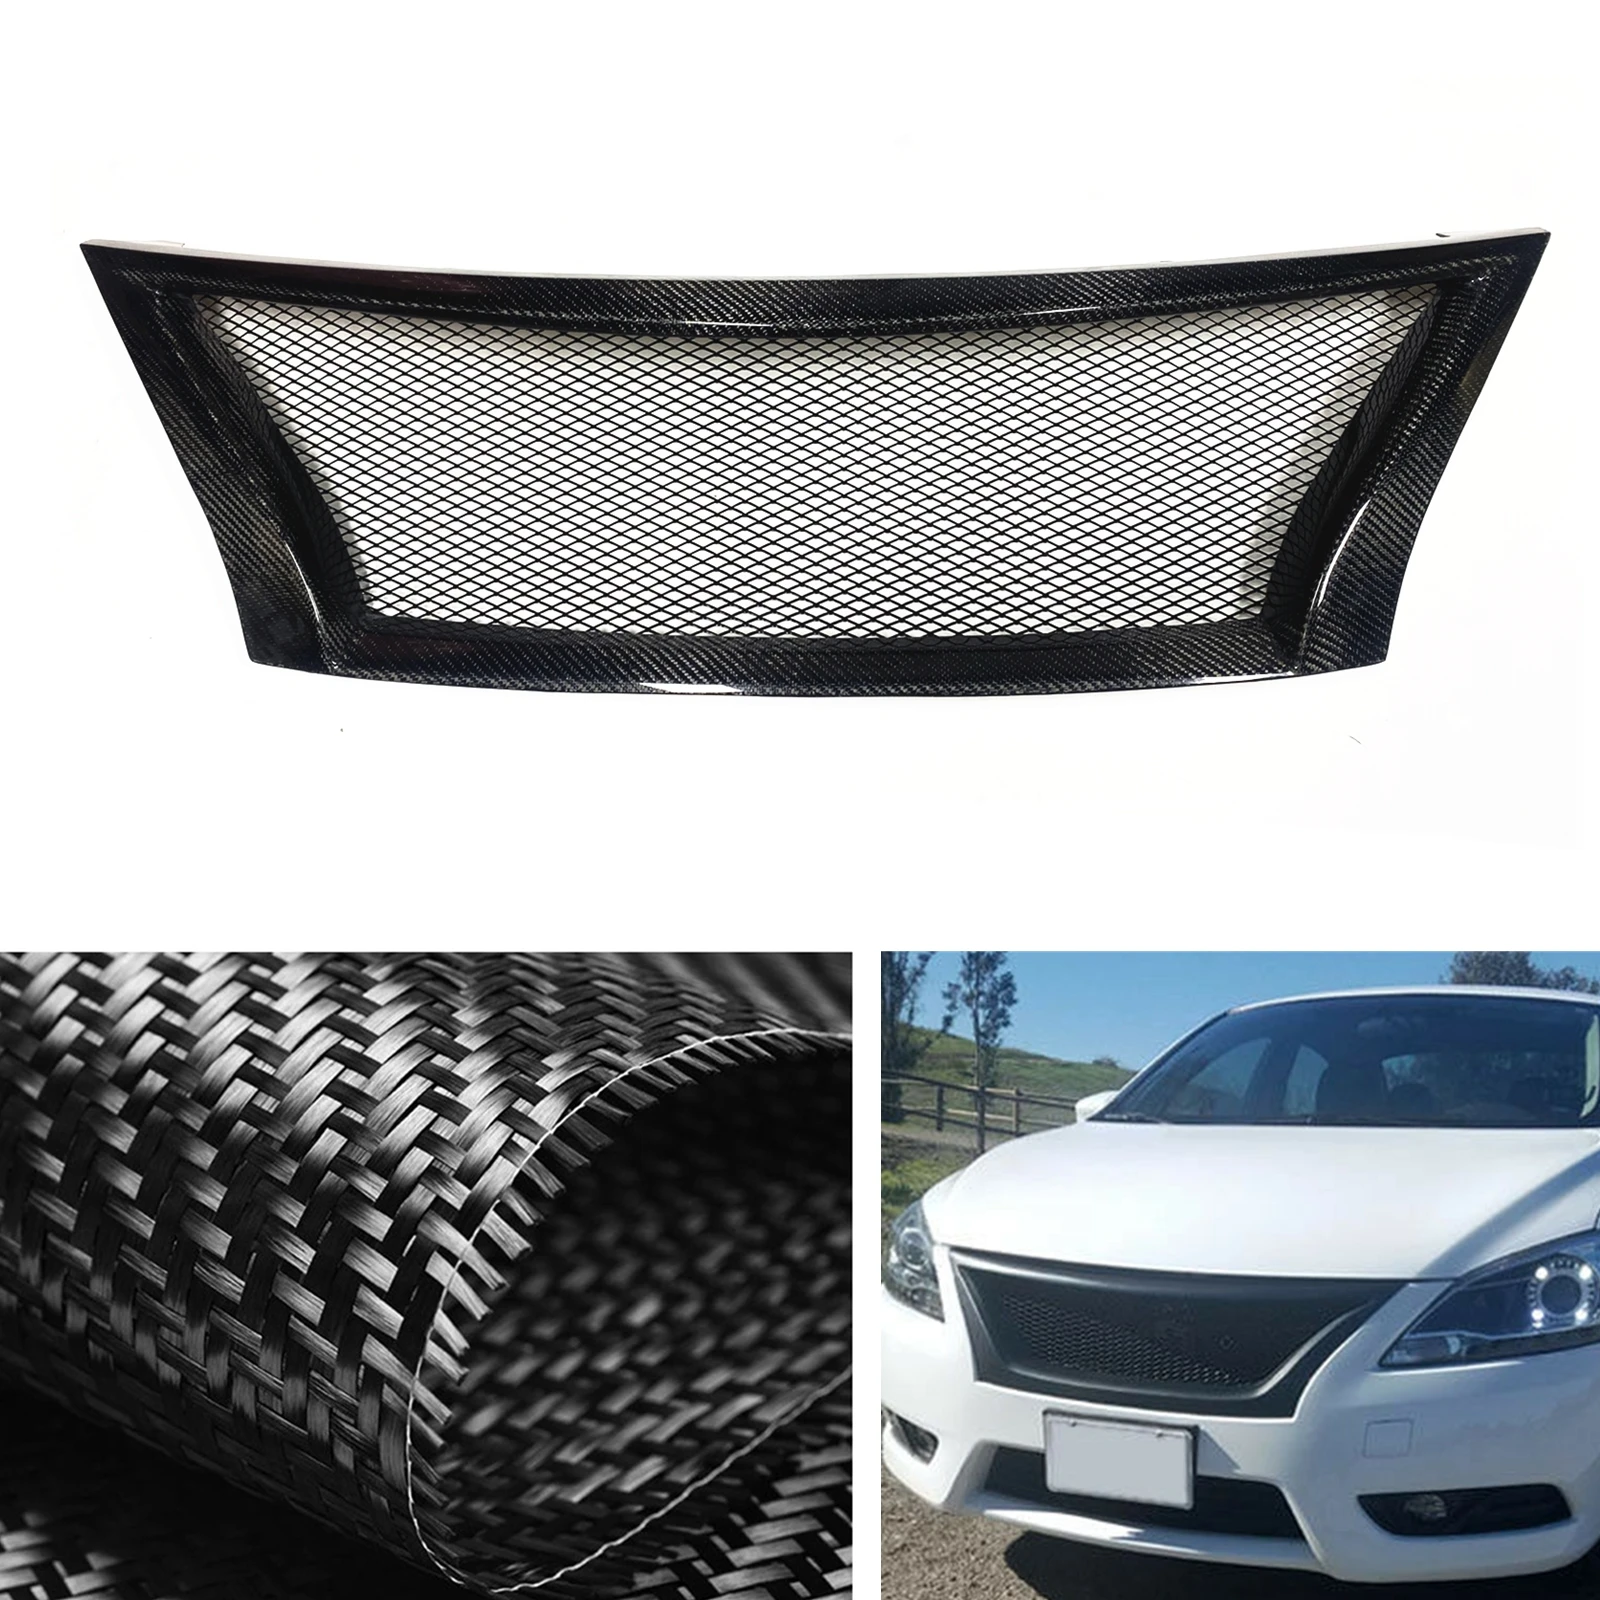 

Передняя решетка гоночная решетка для Nissan Sentra 2013-2015, сотовый стиль, настоящее углеродное волокно/стекловолокно, верхний бампер, фоторешетка